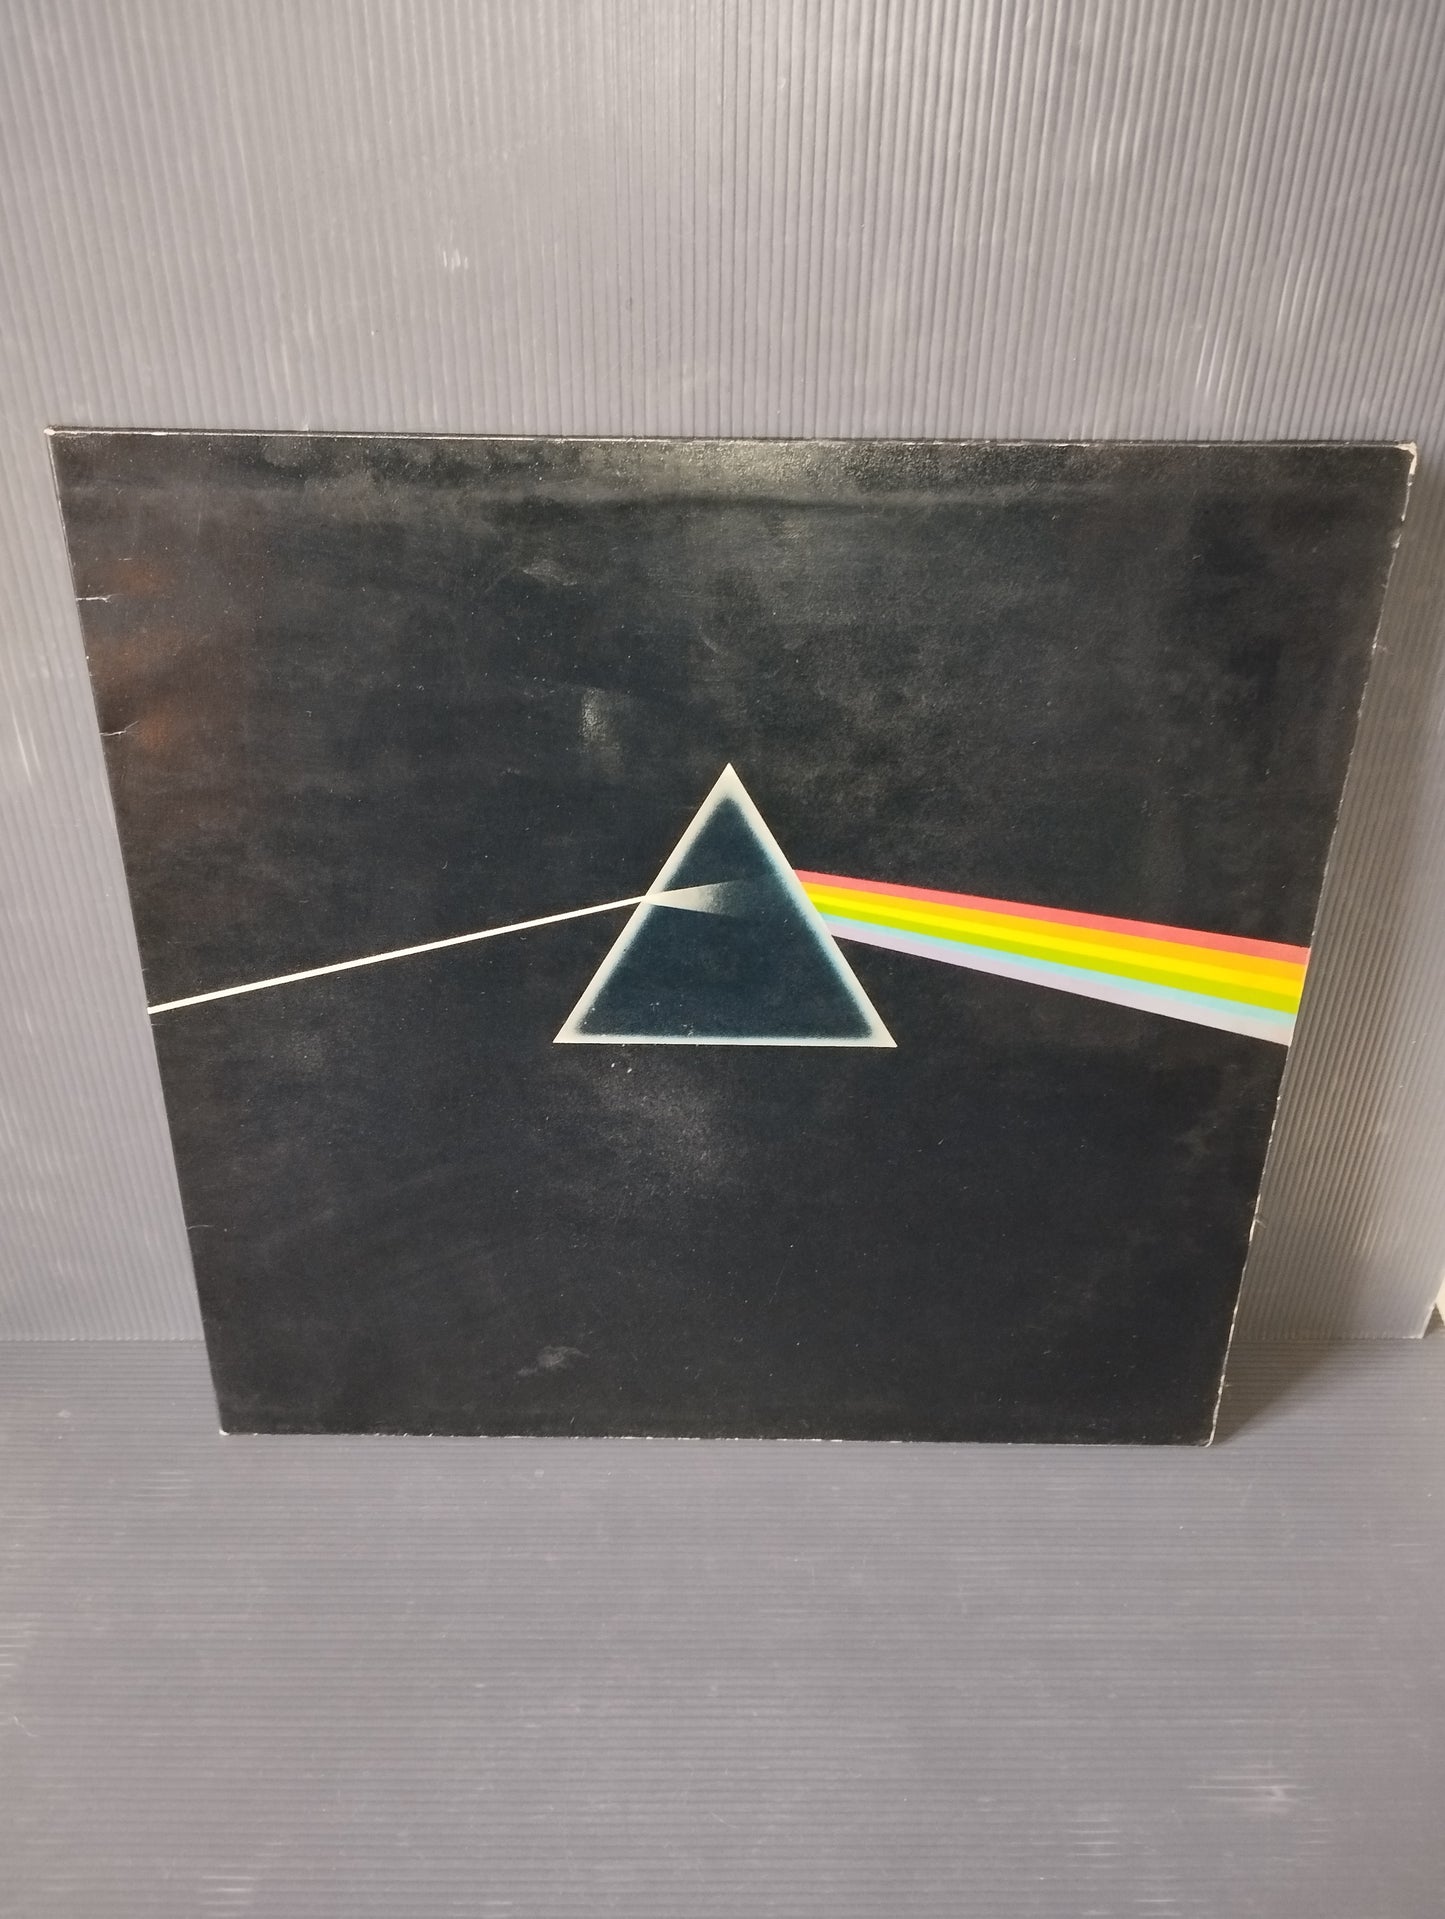 The Dark Side Of The Moon" Pink Floyd Lp 33 giri